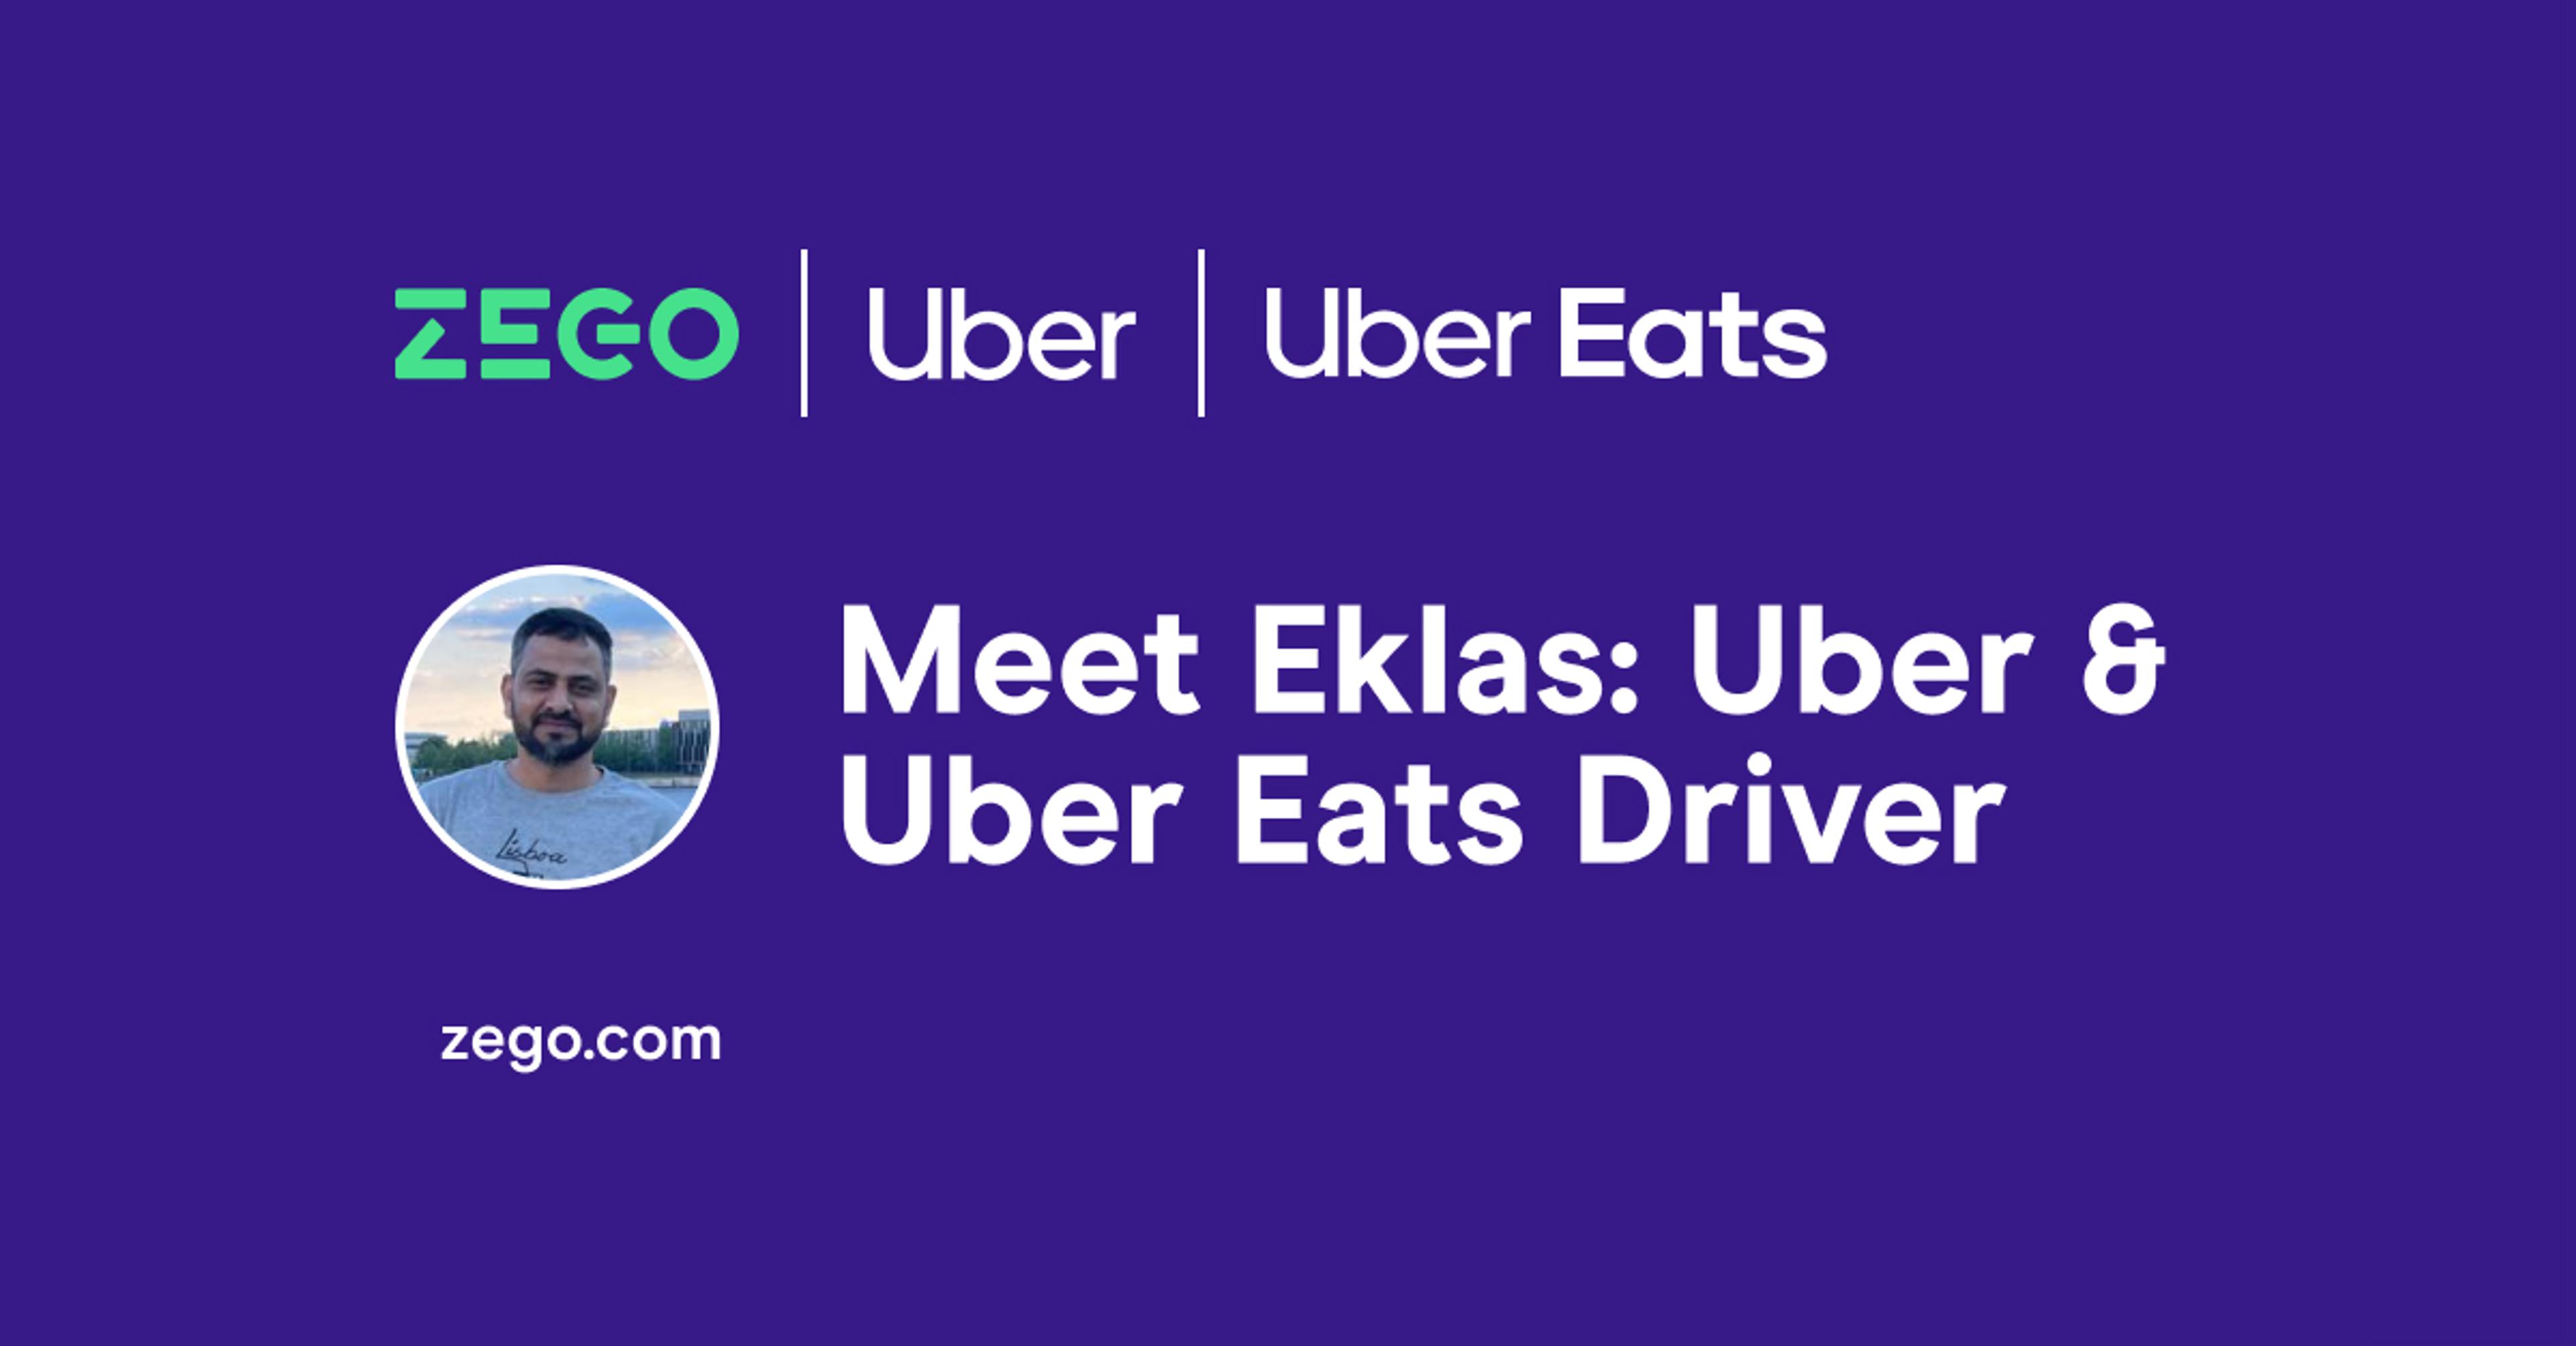 Meet Eklas: Uber & Uber Eats Driver